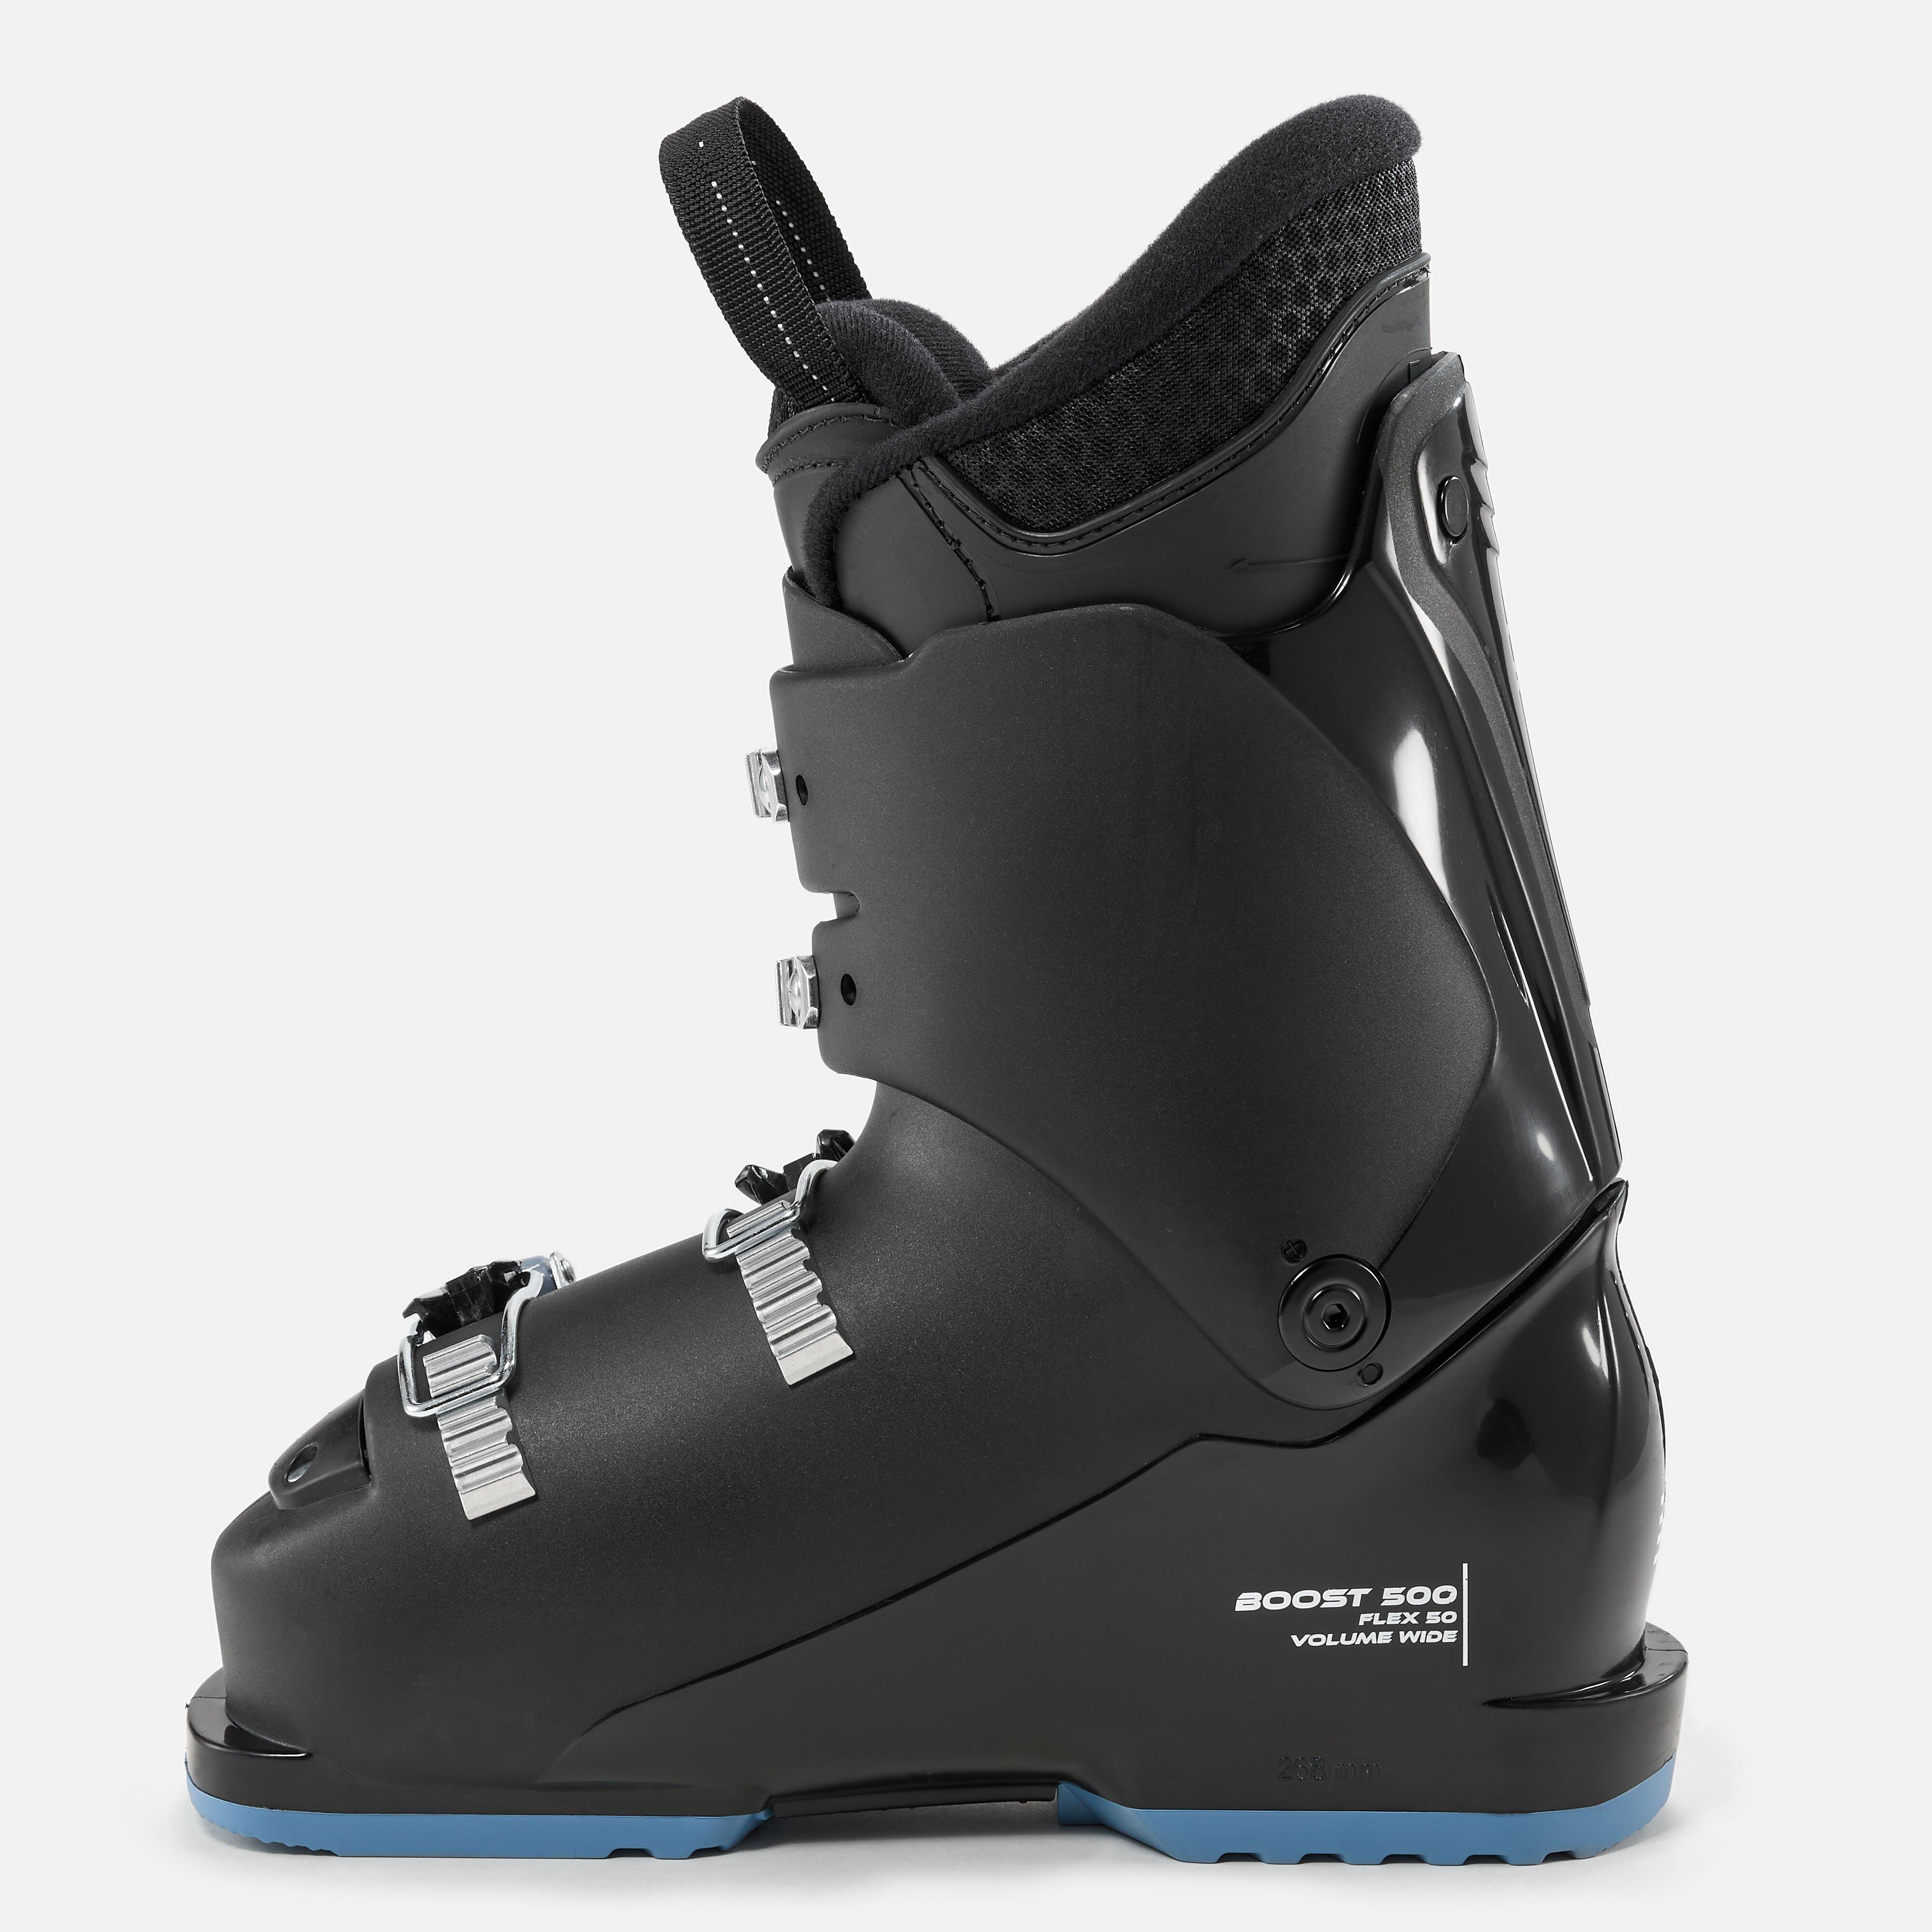 WEDZE  Chaussures de ski - 500 